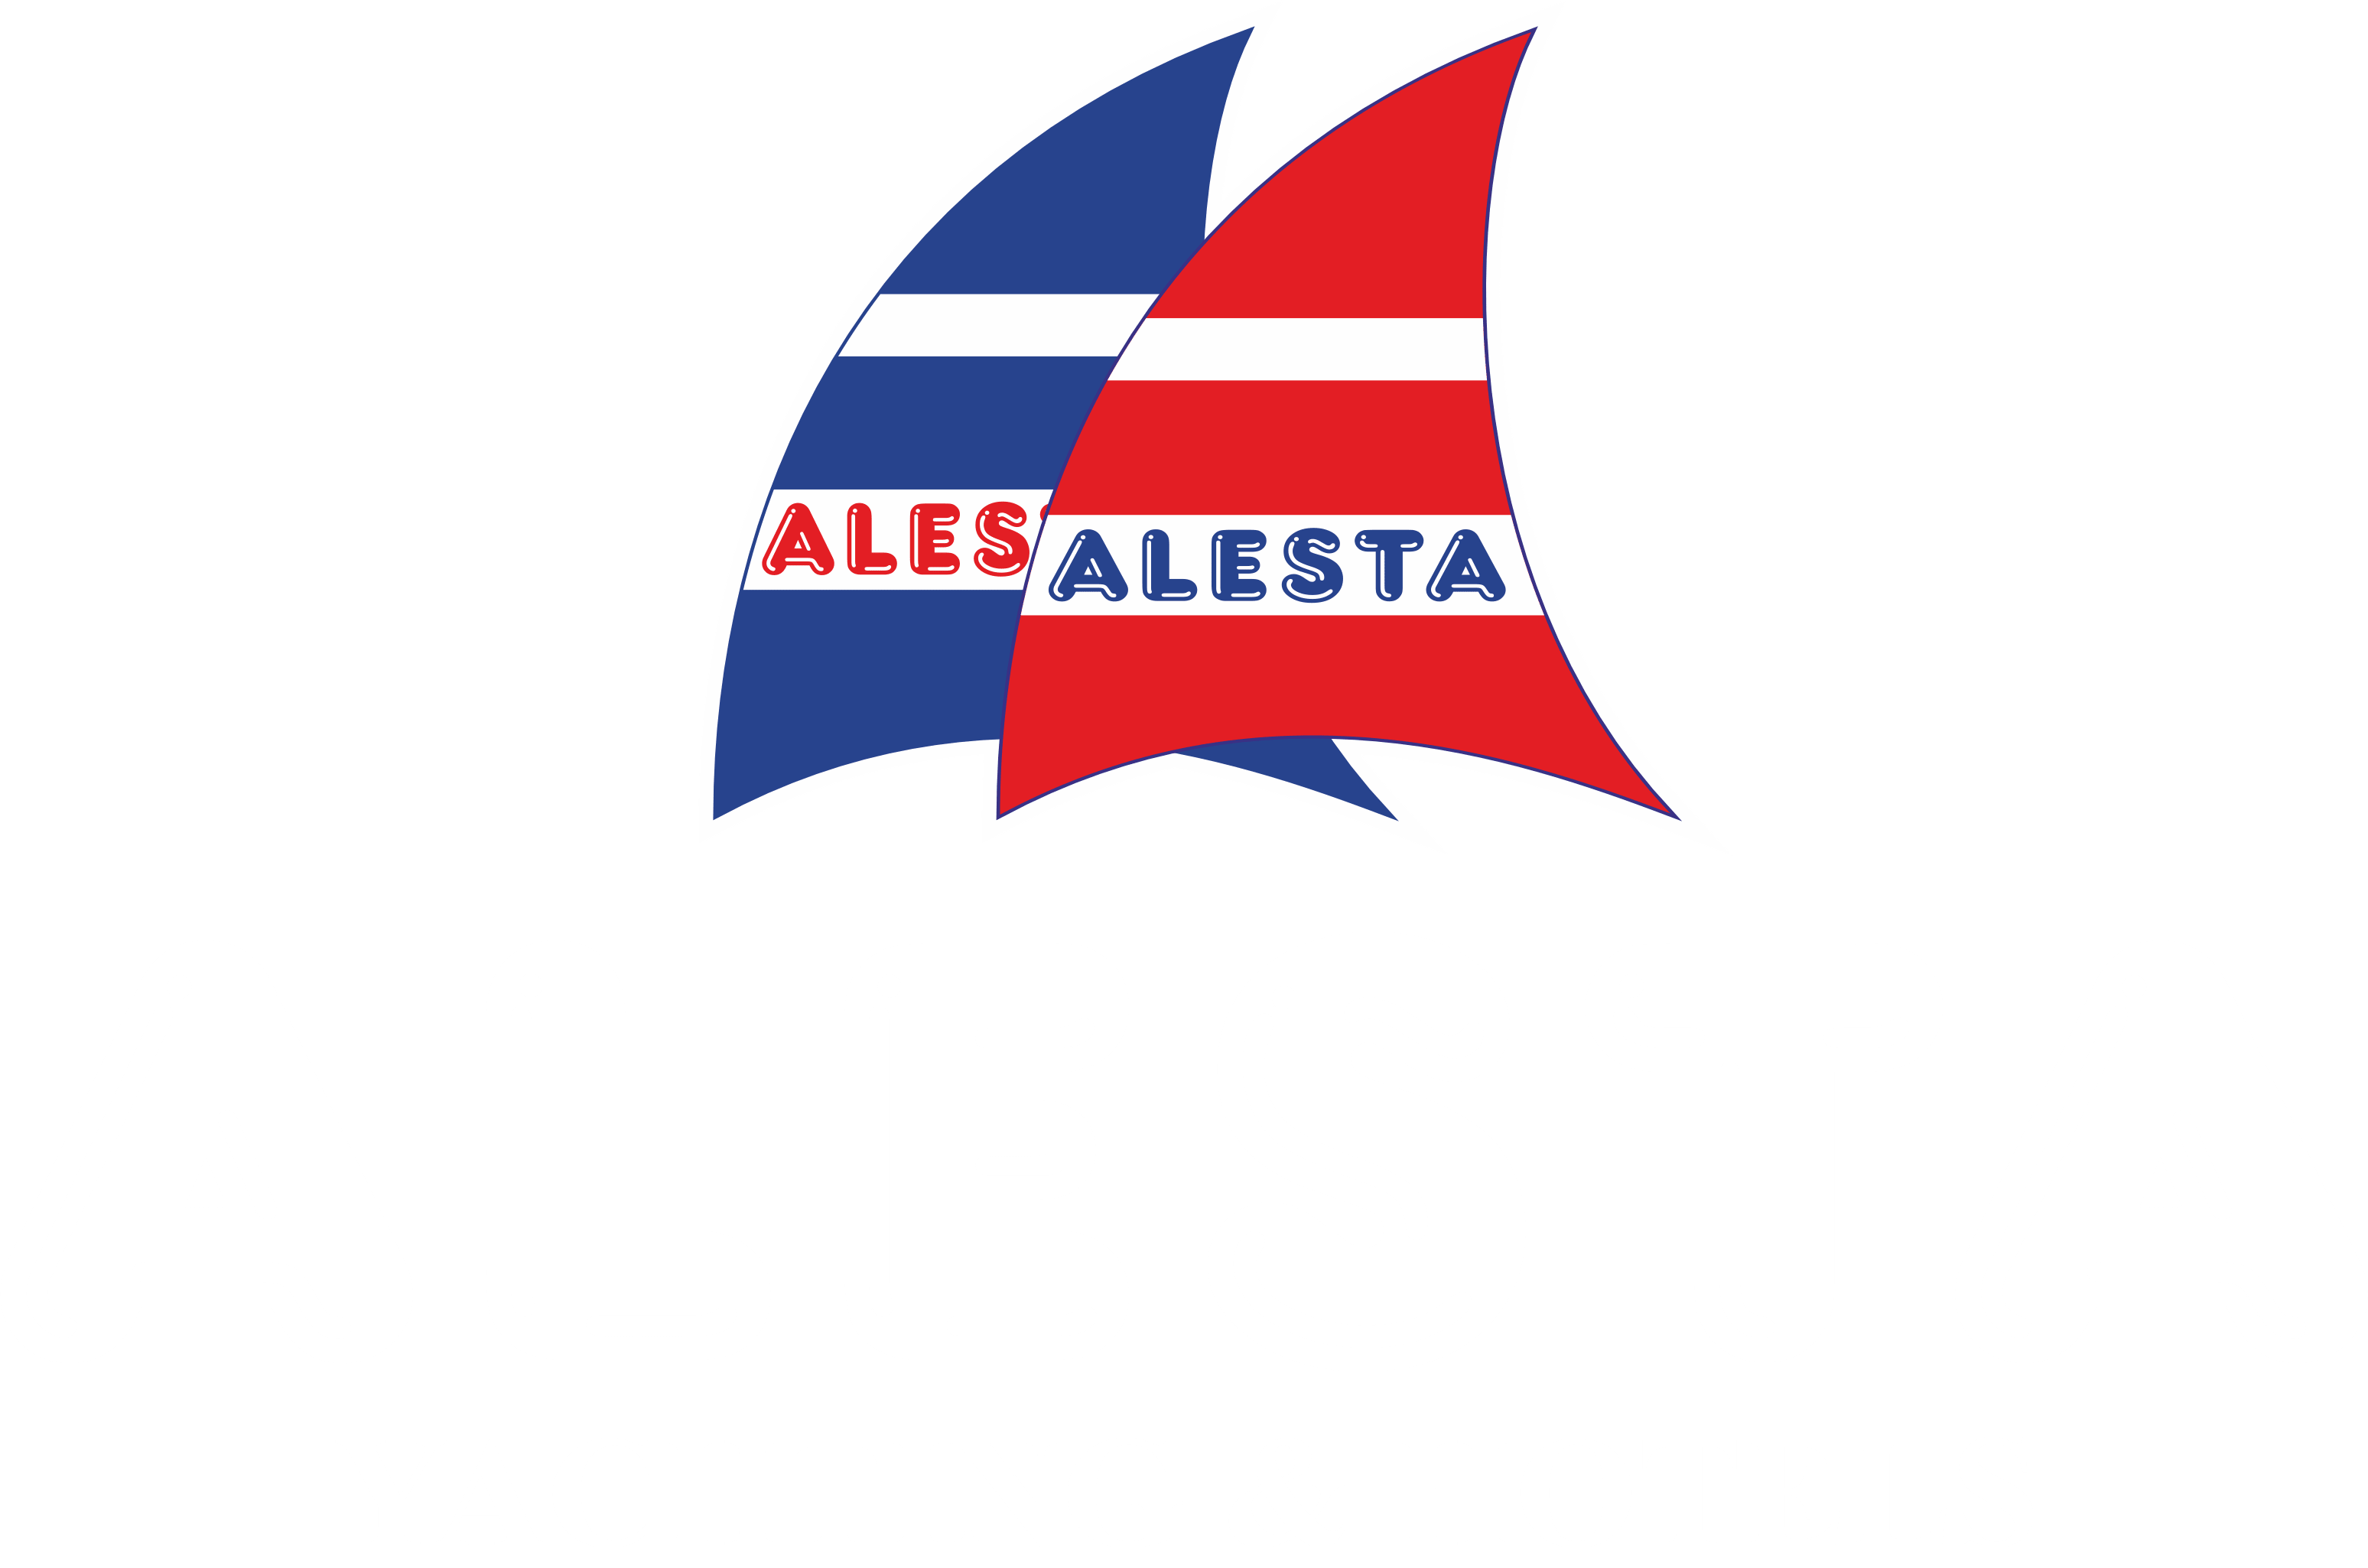 Fethiye Yat Kiralama | Alesta Yachting | Fethiye Yacht Rental | Alesta Yacht Hotel - Fethiye Yat Kiralama | Alesta Yachting | Fethiye Yacht Rental